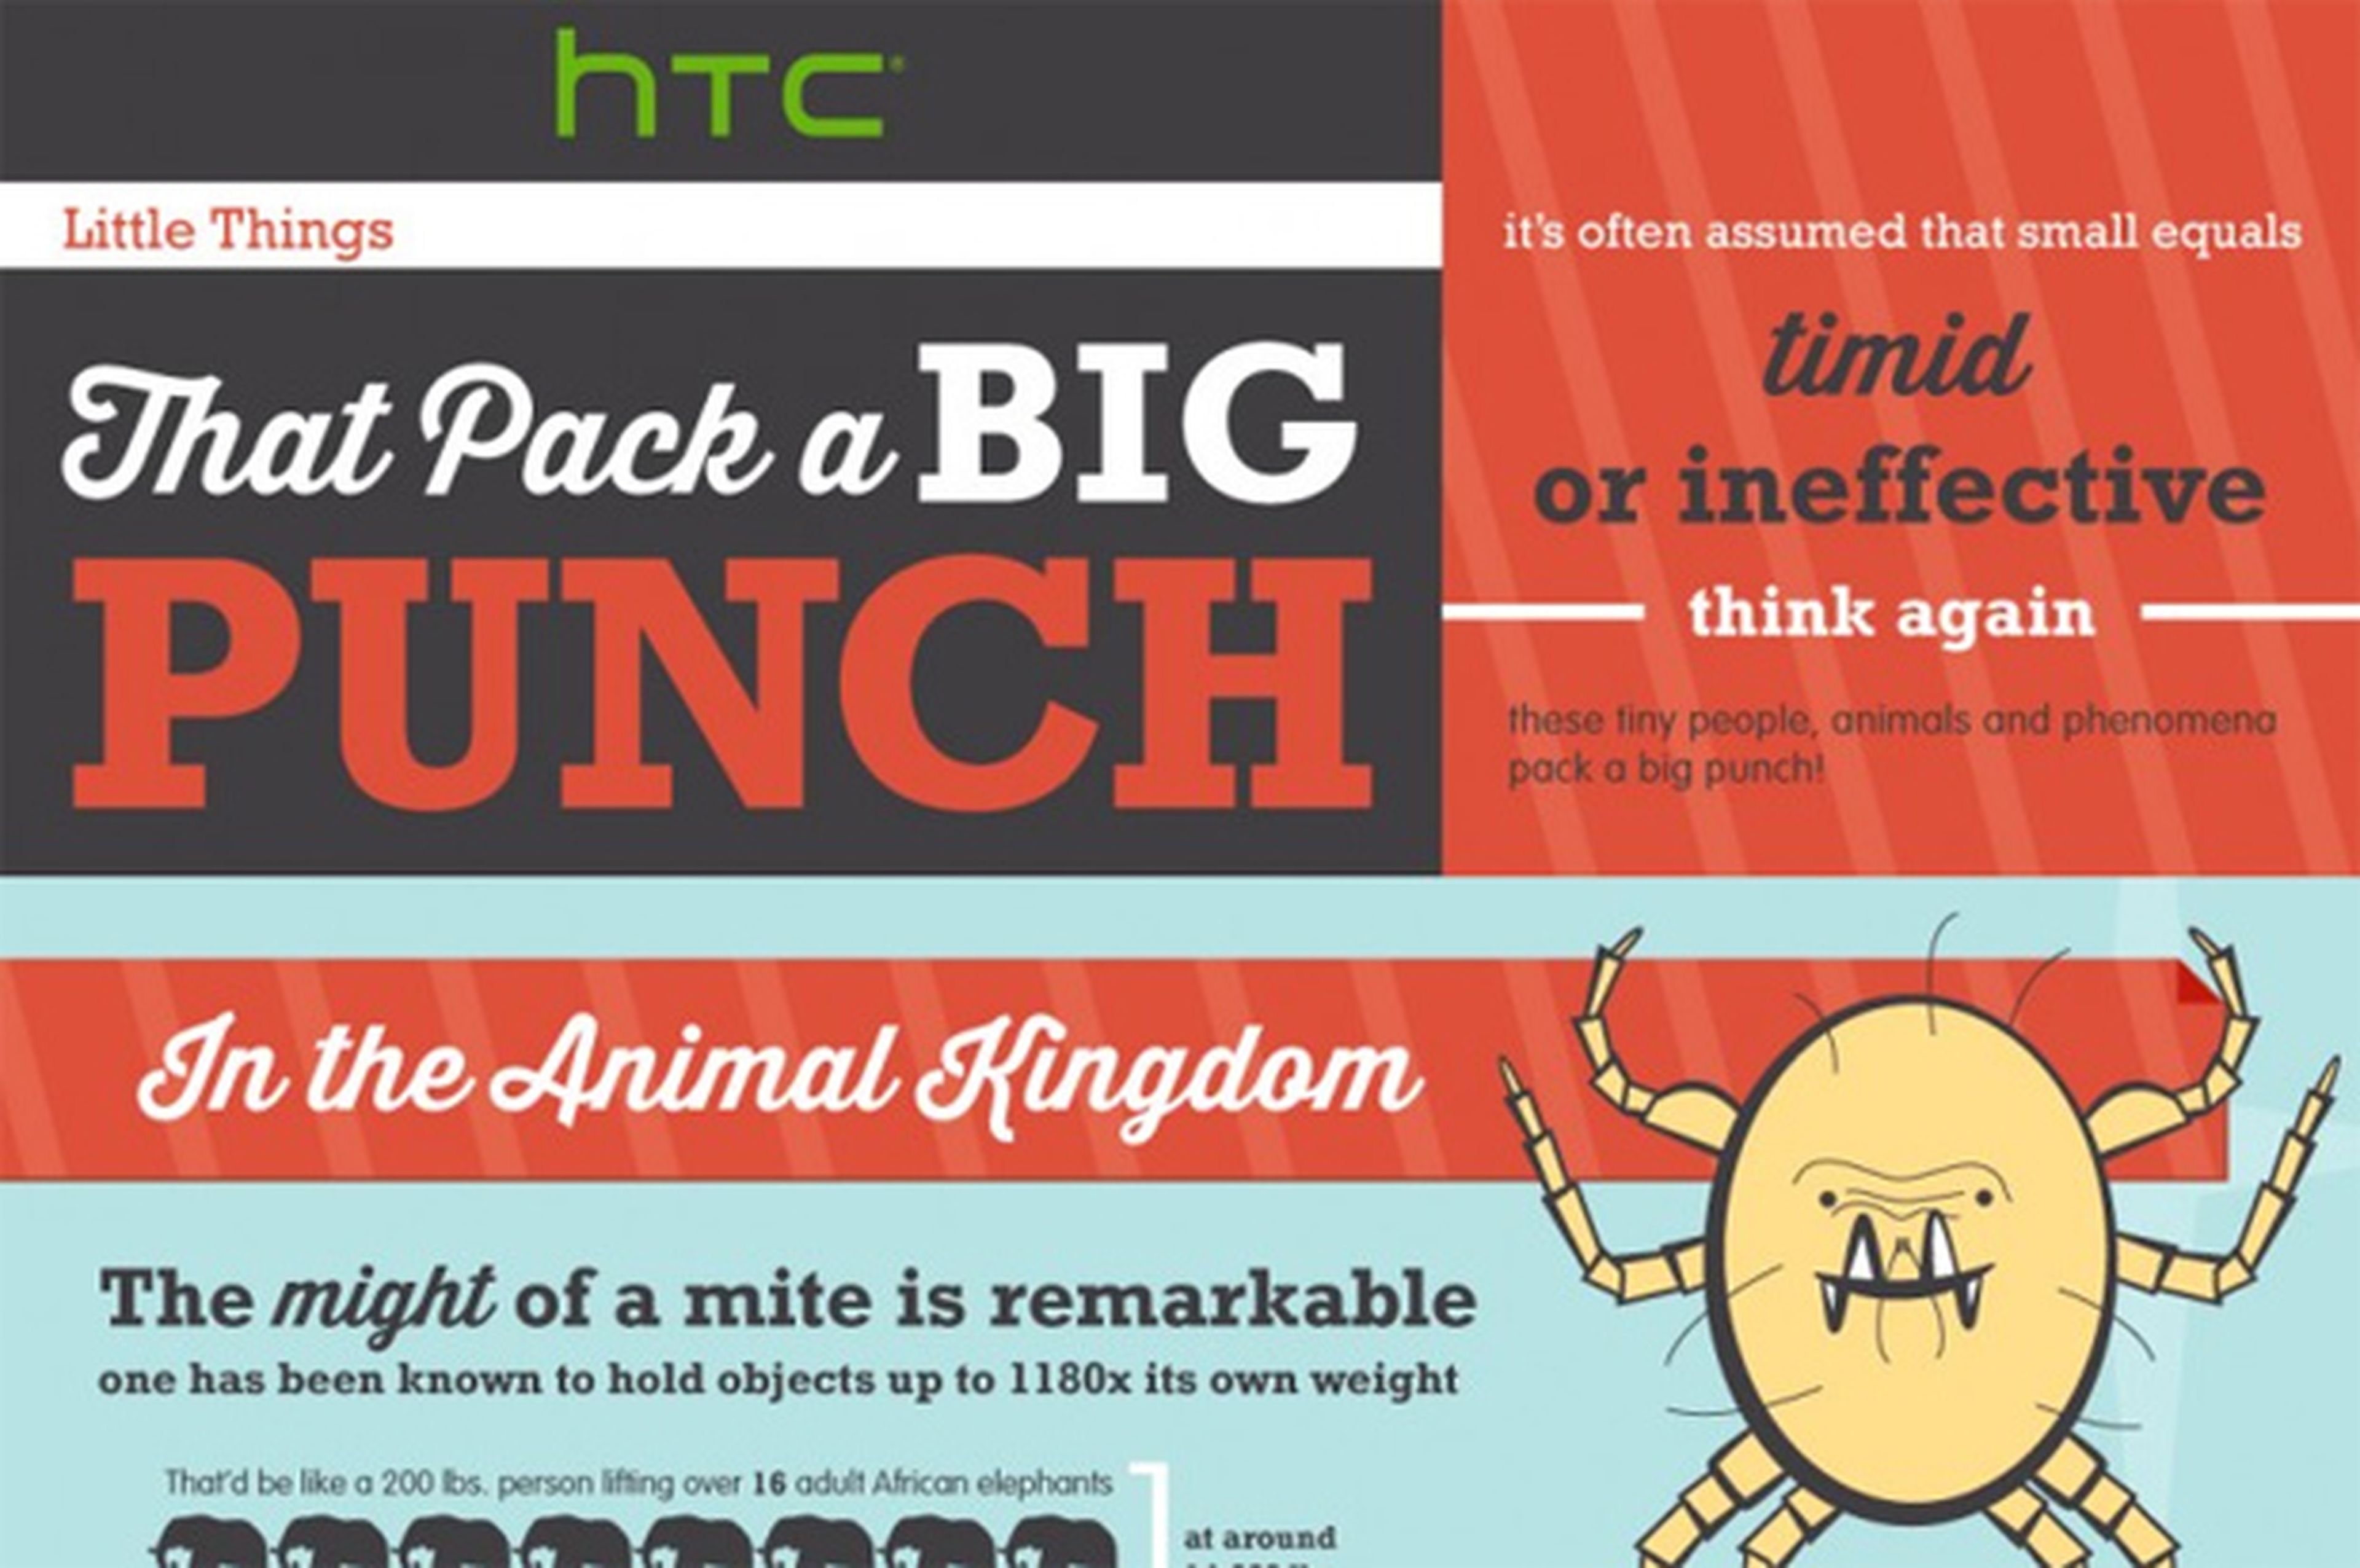 El HTC One Mini: ¿Confirmado por HTC en su blog?